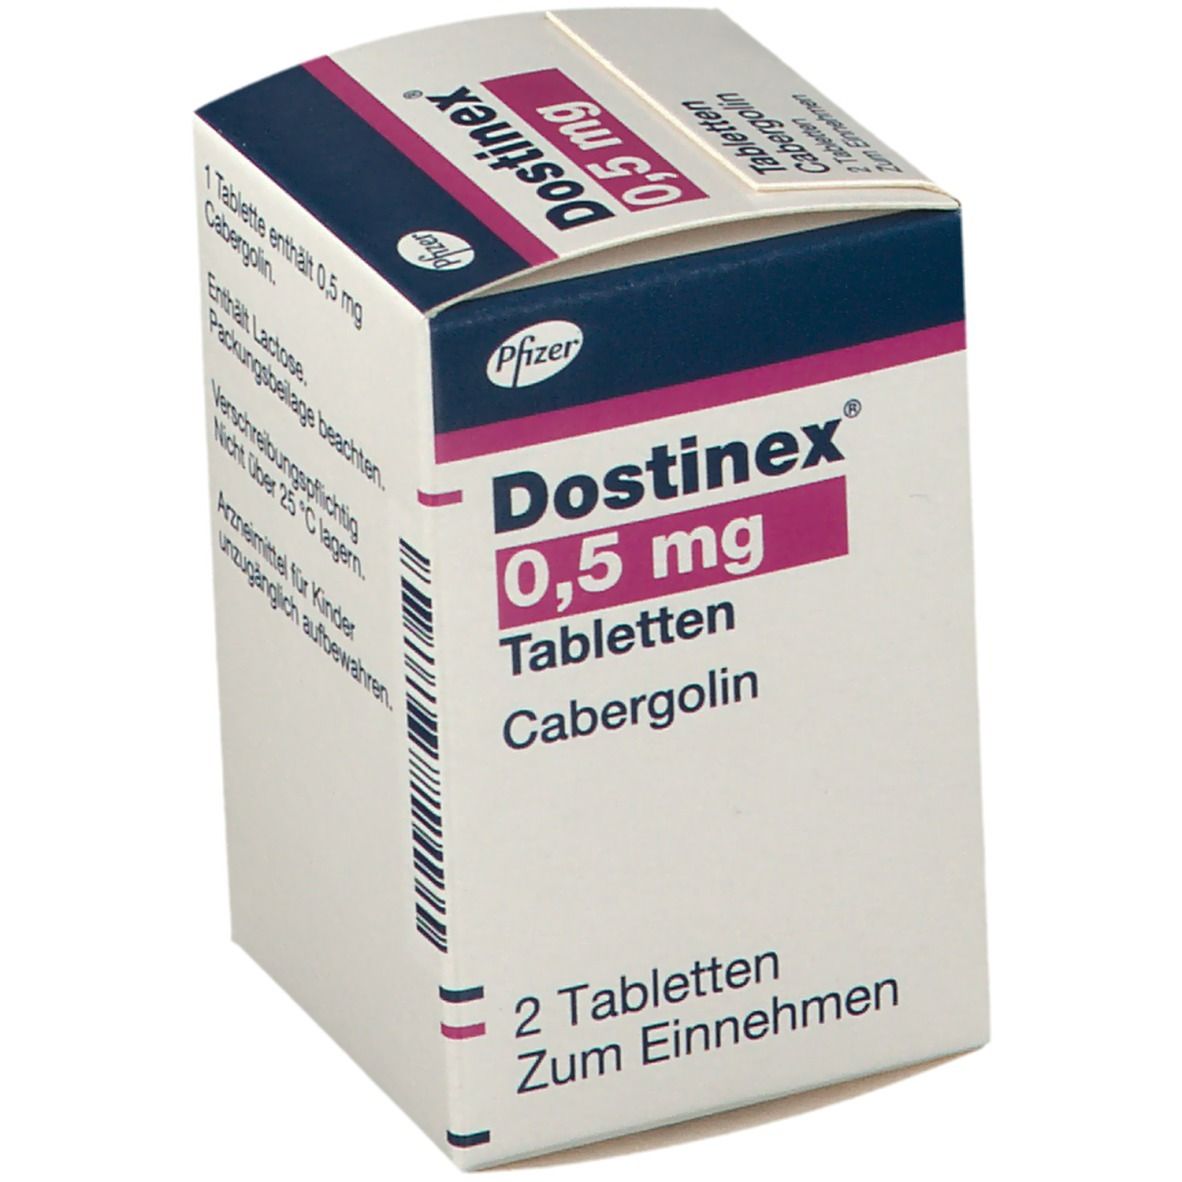 Dostinex® 0,5 mg